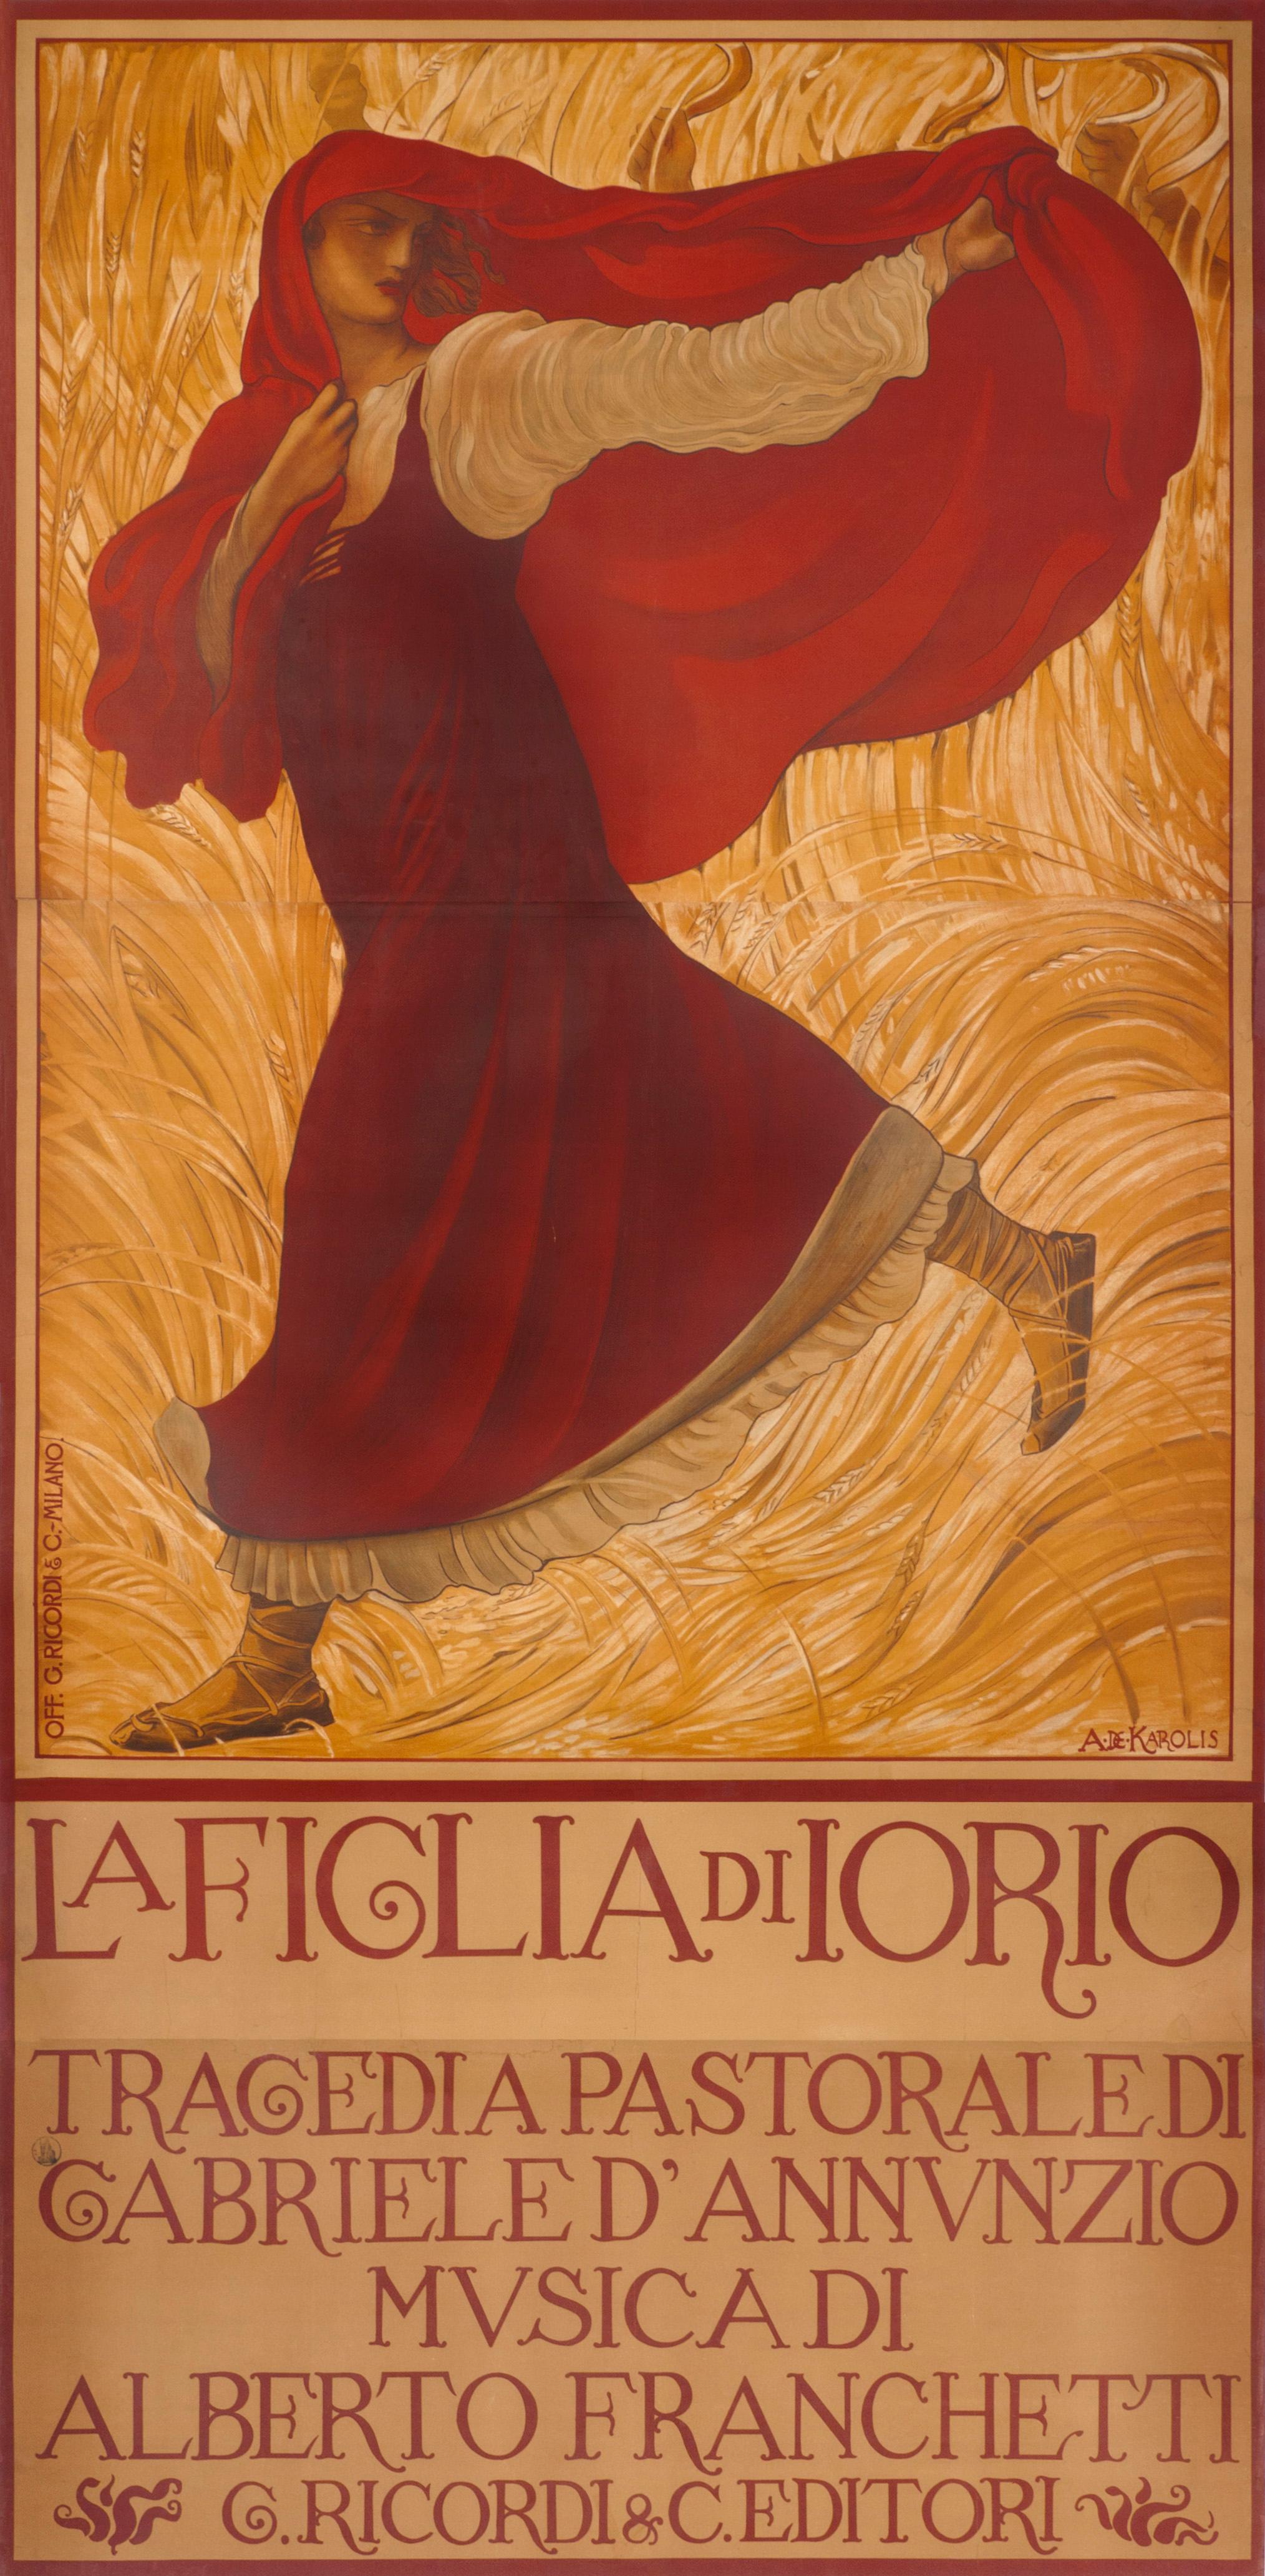 "La Figlia di Iorio" Original Antique 10 foot tall Opera Poster - Print by Adolfo de Carolis